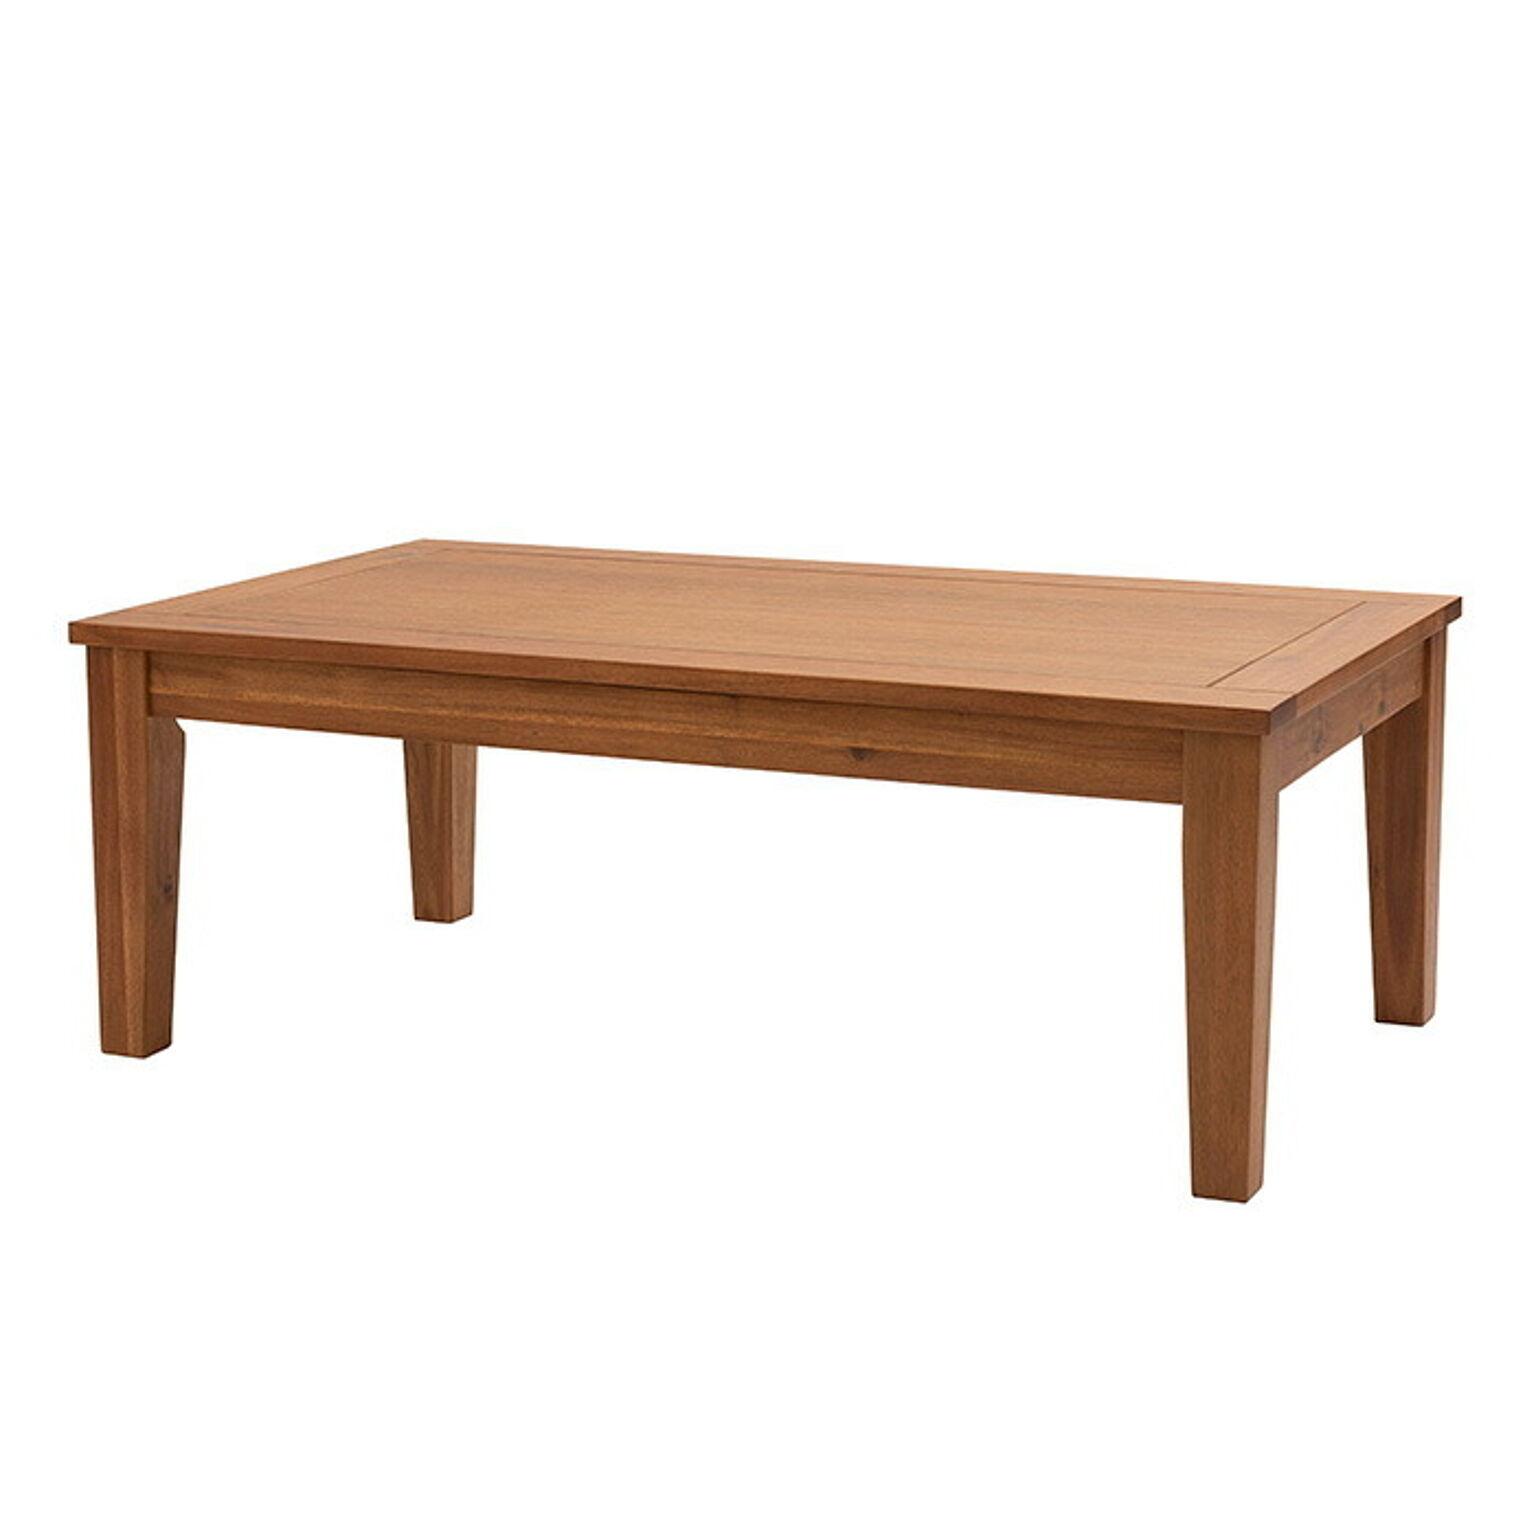 こたつ テーブル ロータイプ 長方形 スクエア こ北欧 おしゃれ 105×60 天然木 アカシア 1人用 2人用 木製 リビング 長方形 東谷